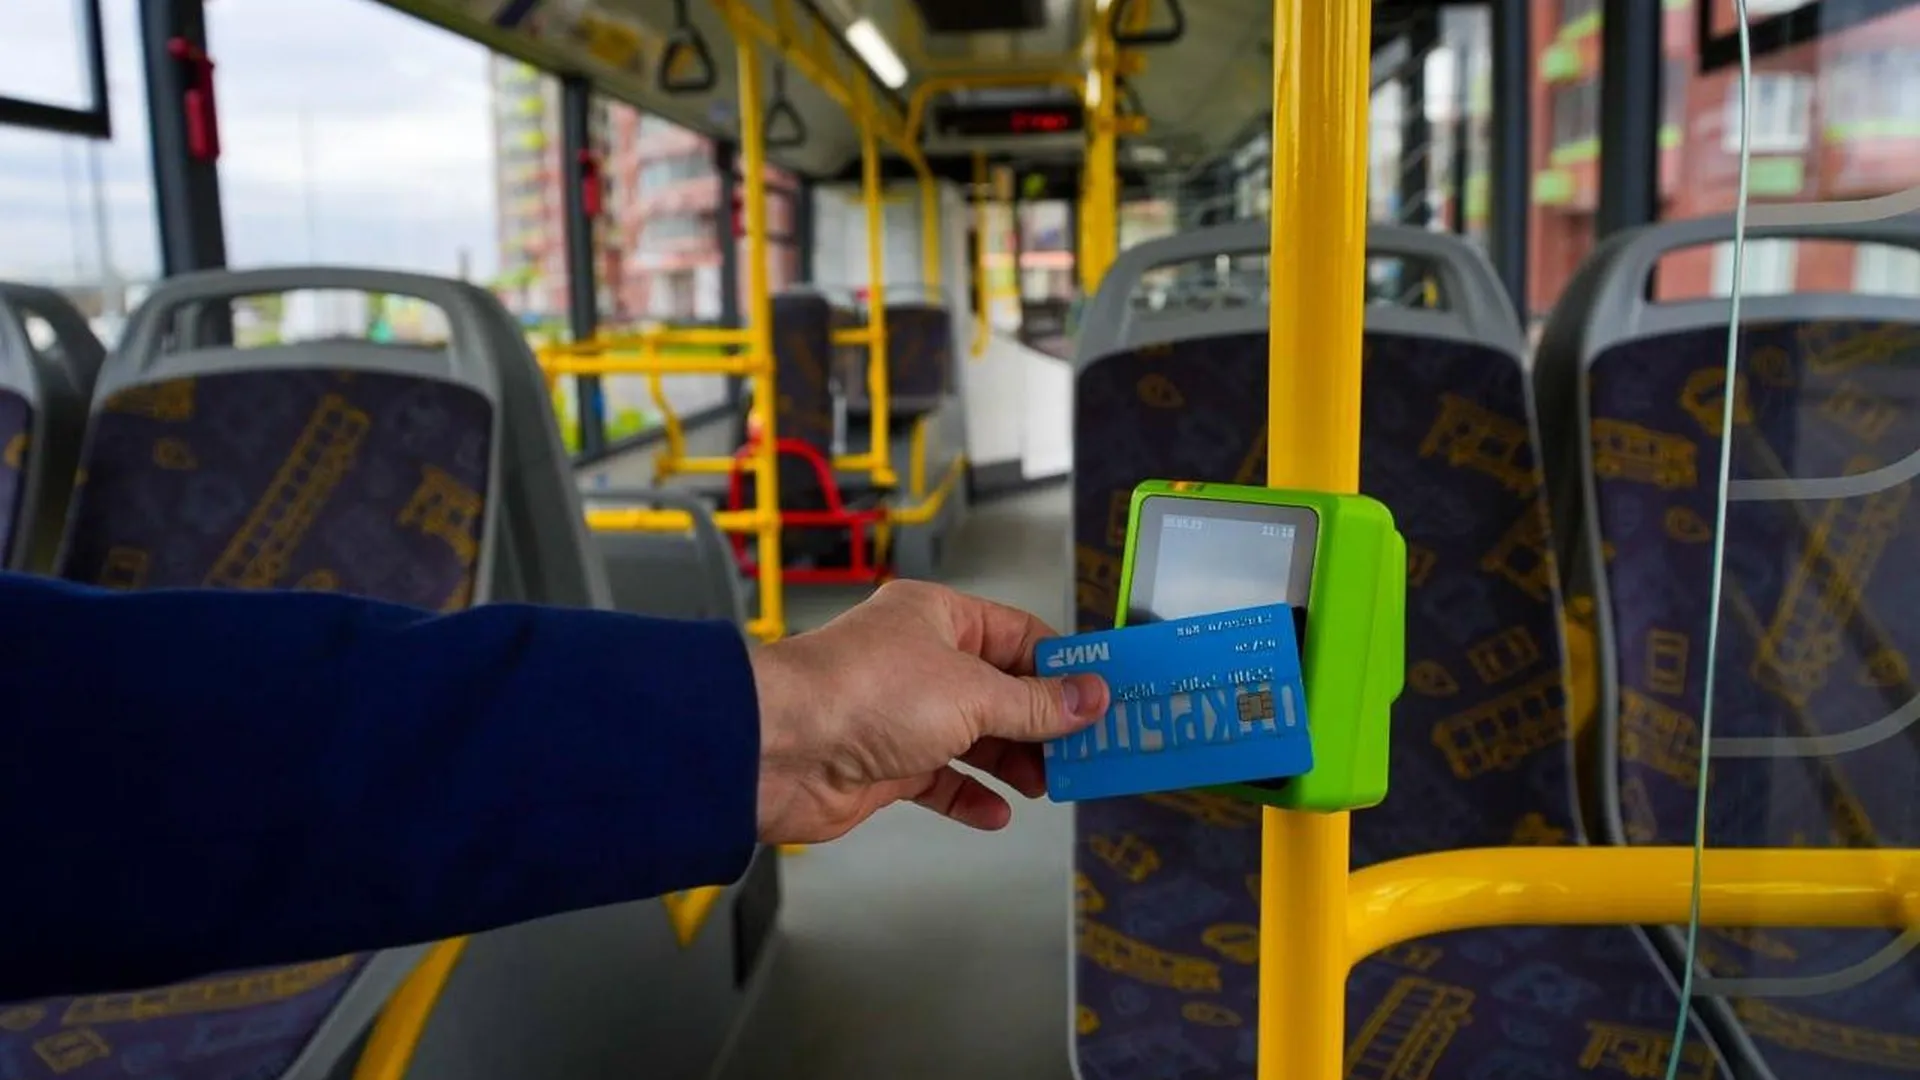 Пассажиры «Мострансавто» совершили более 22 млн поездок по банковским картам с начала года